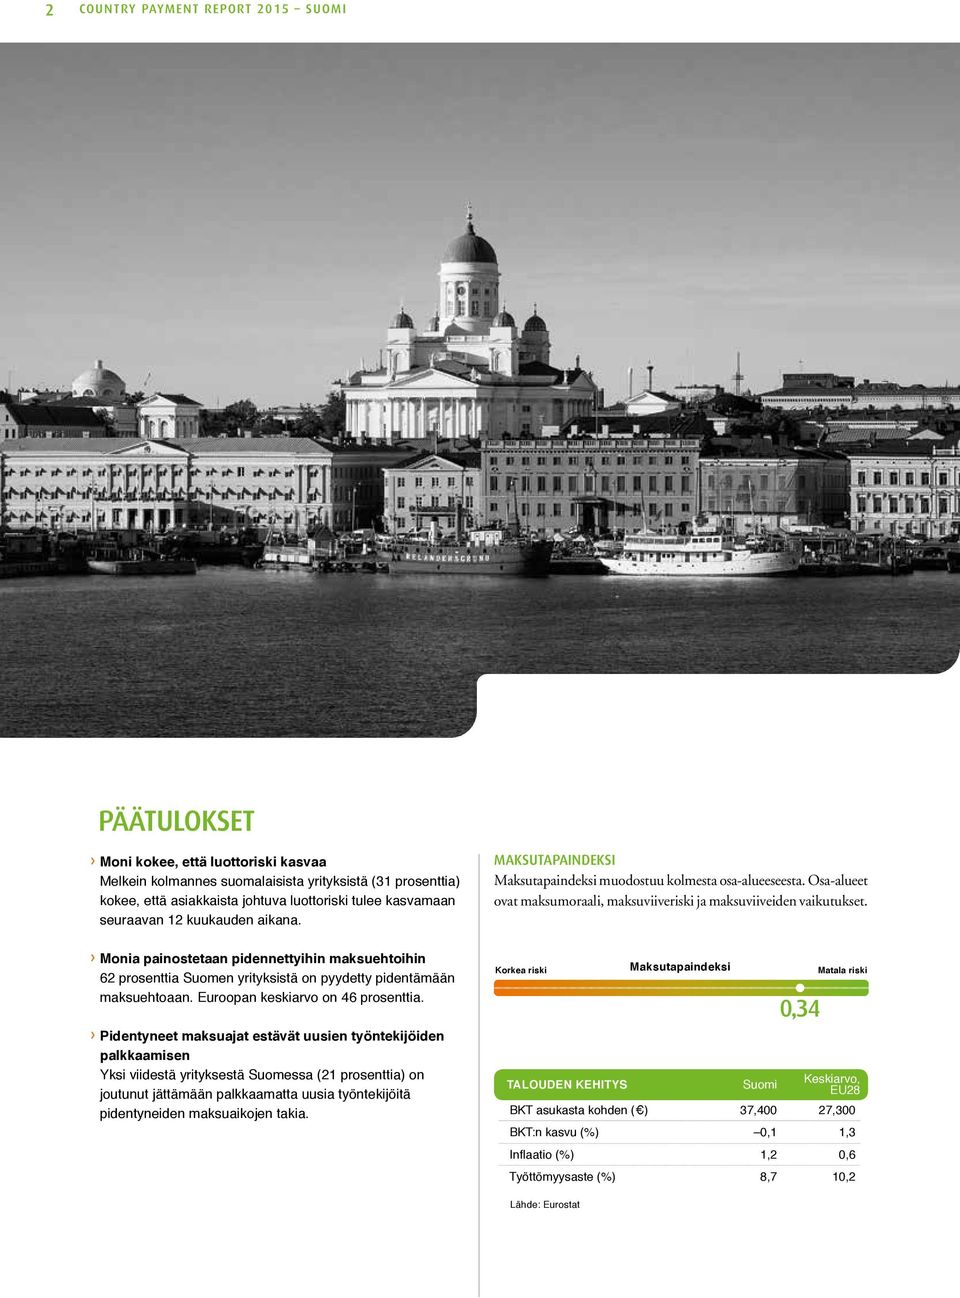 Monia painostetaan pidennettyihin maksuehtoihin 62 prosenttia Suomen yrityksistä on pyydetty pidentämään maksuehtoaan. Euroopan keskiarvo on 46 prosenttia.